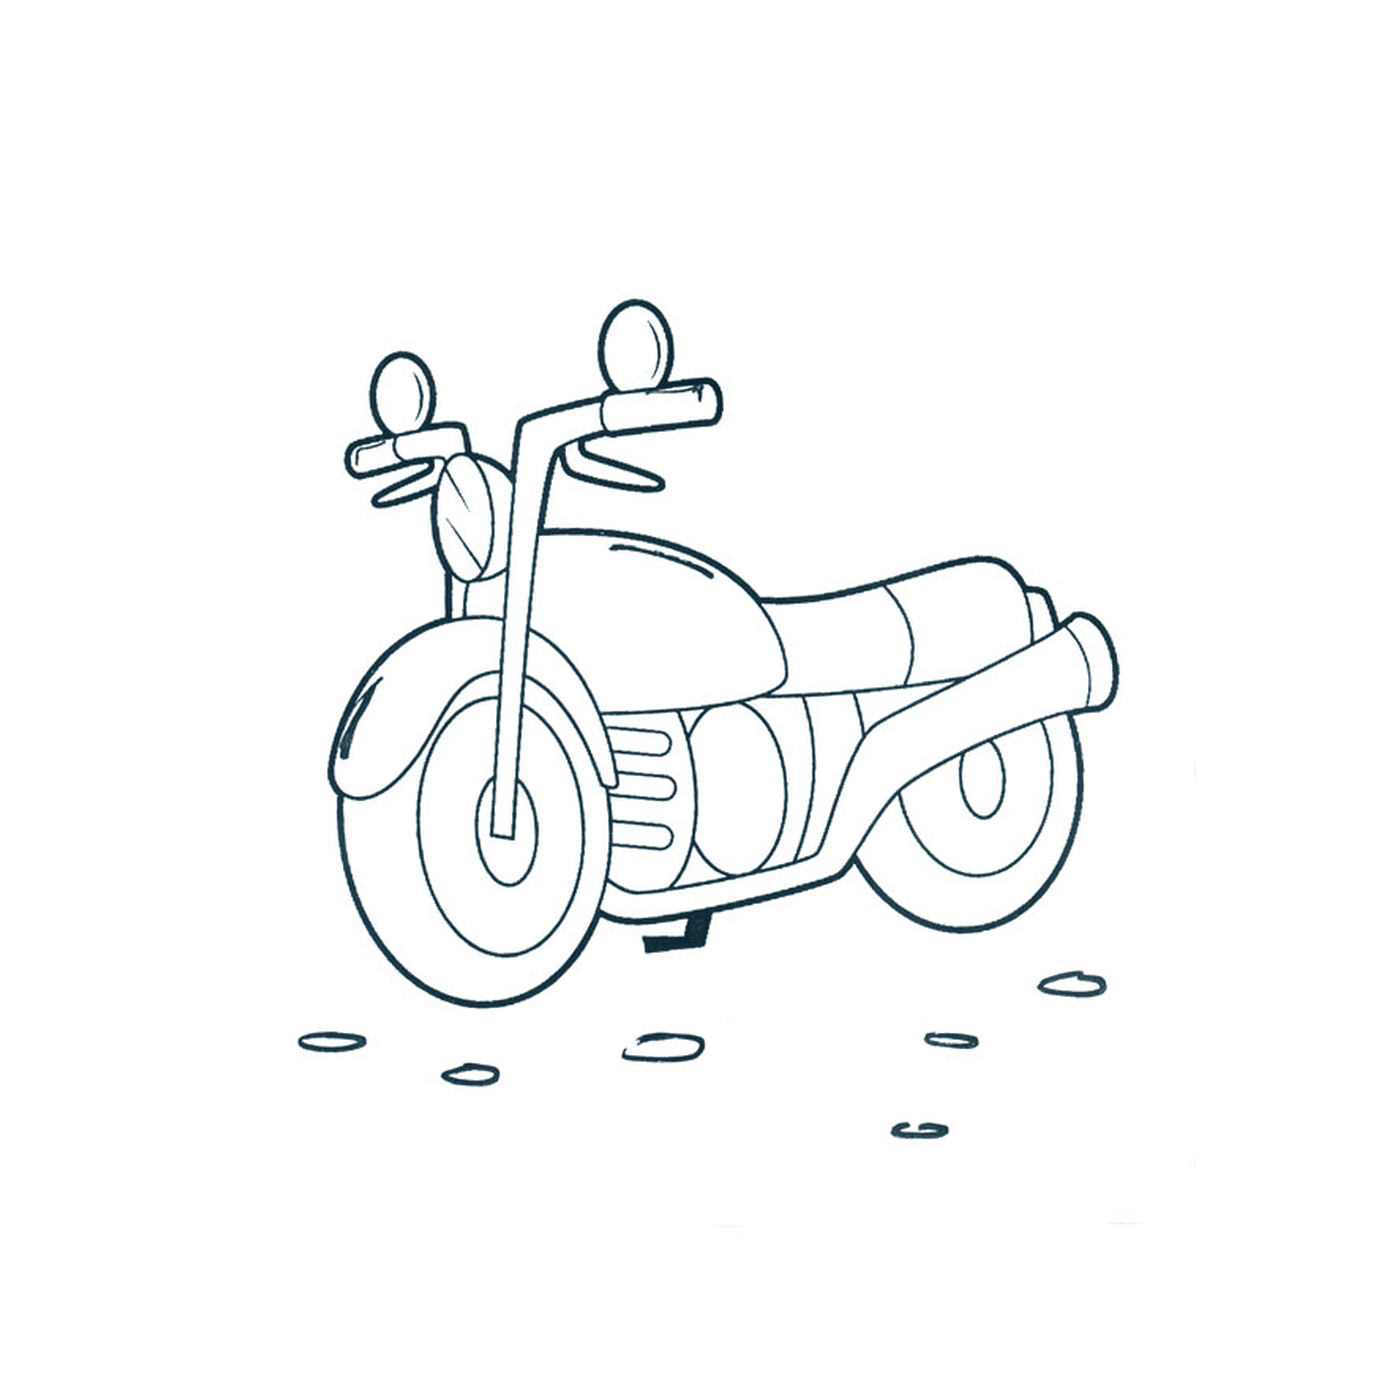  motocicletta posizionata a terra 